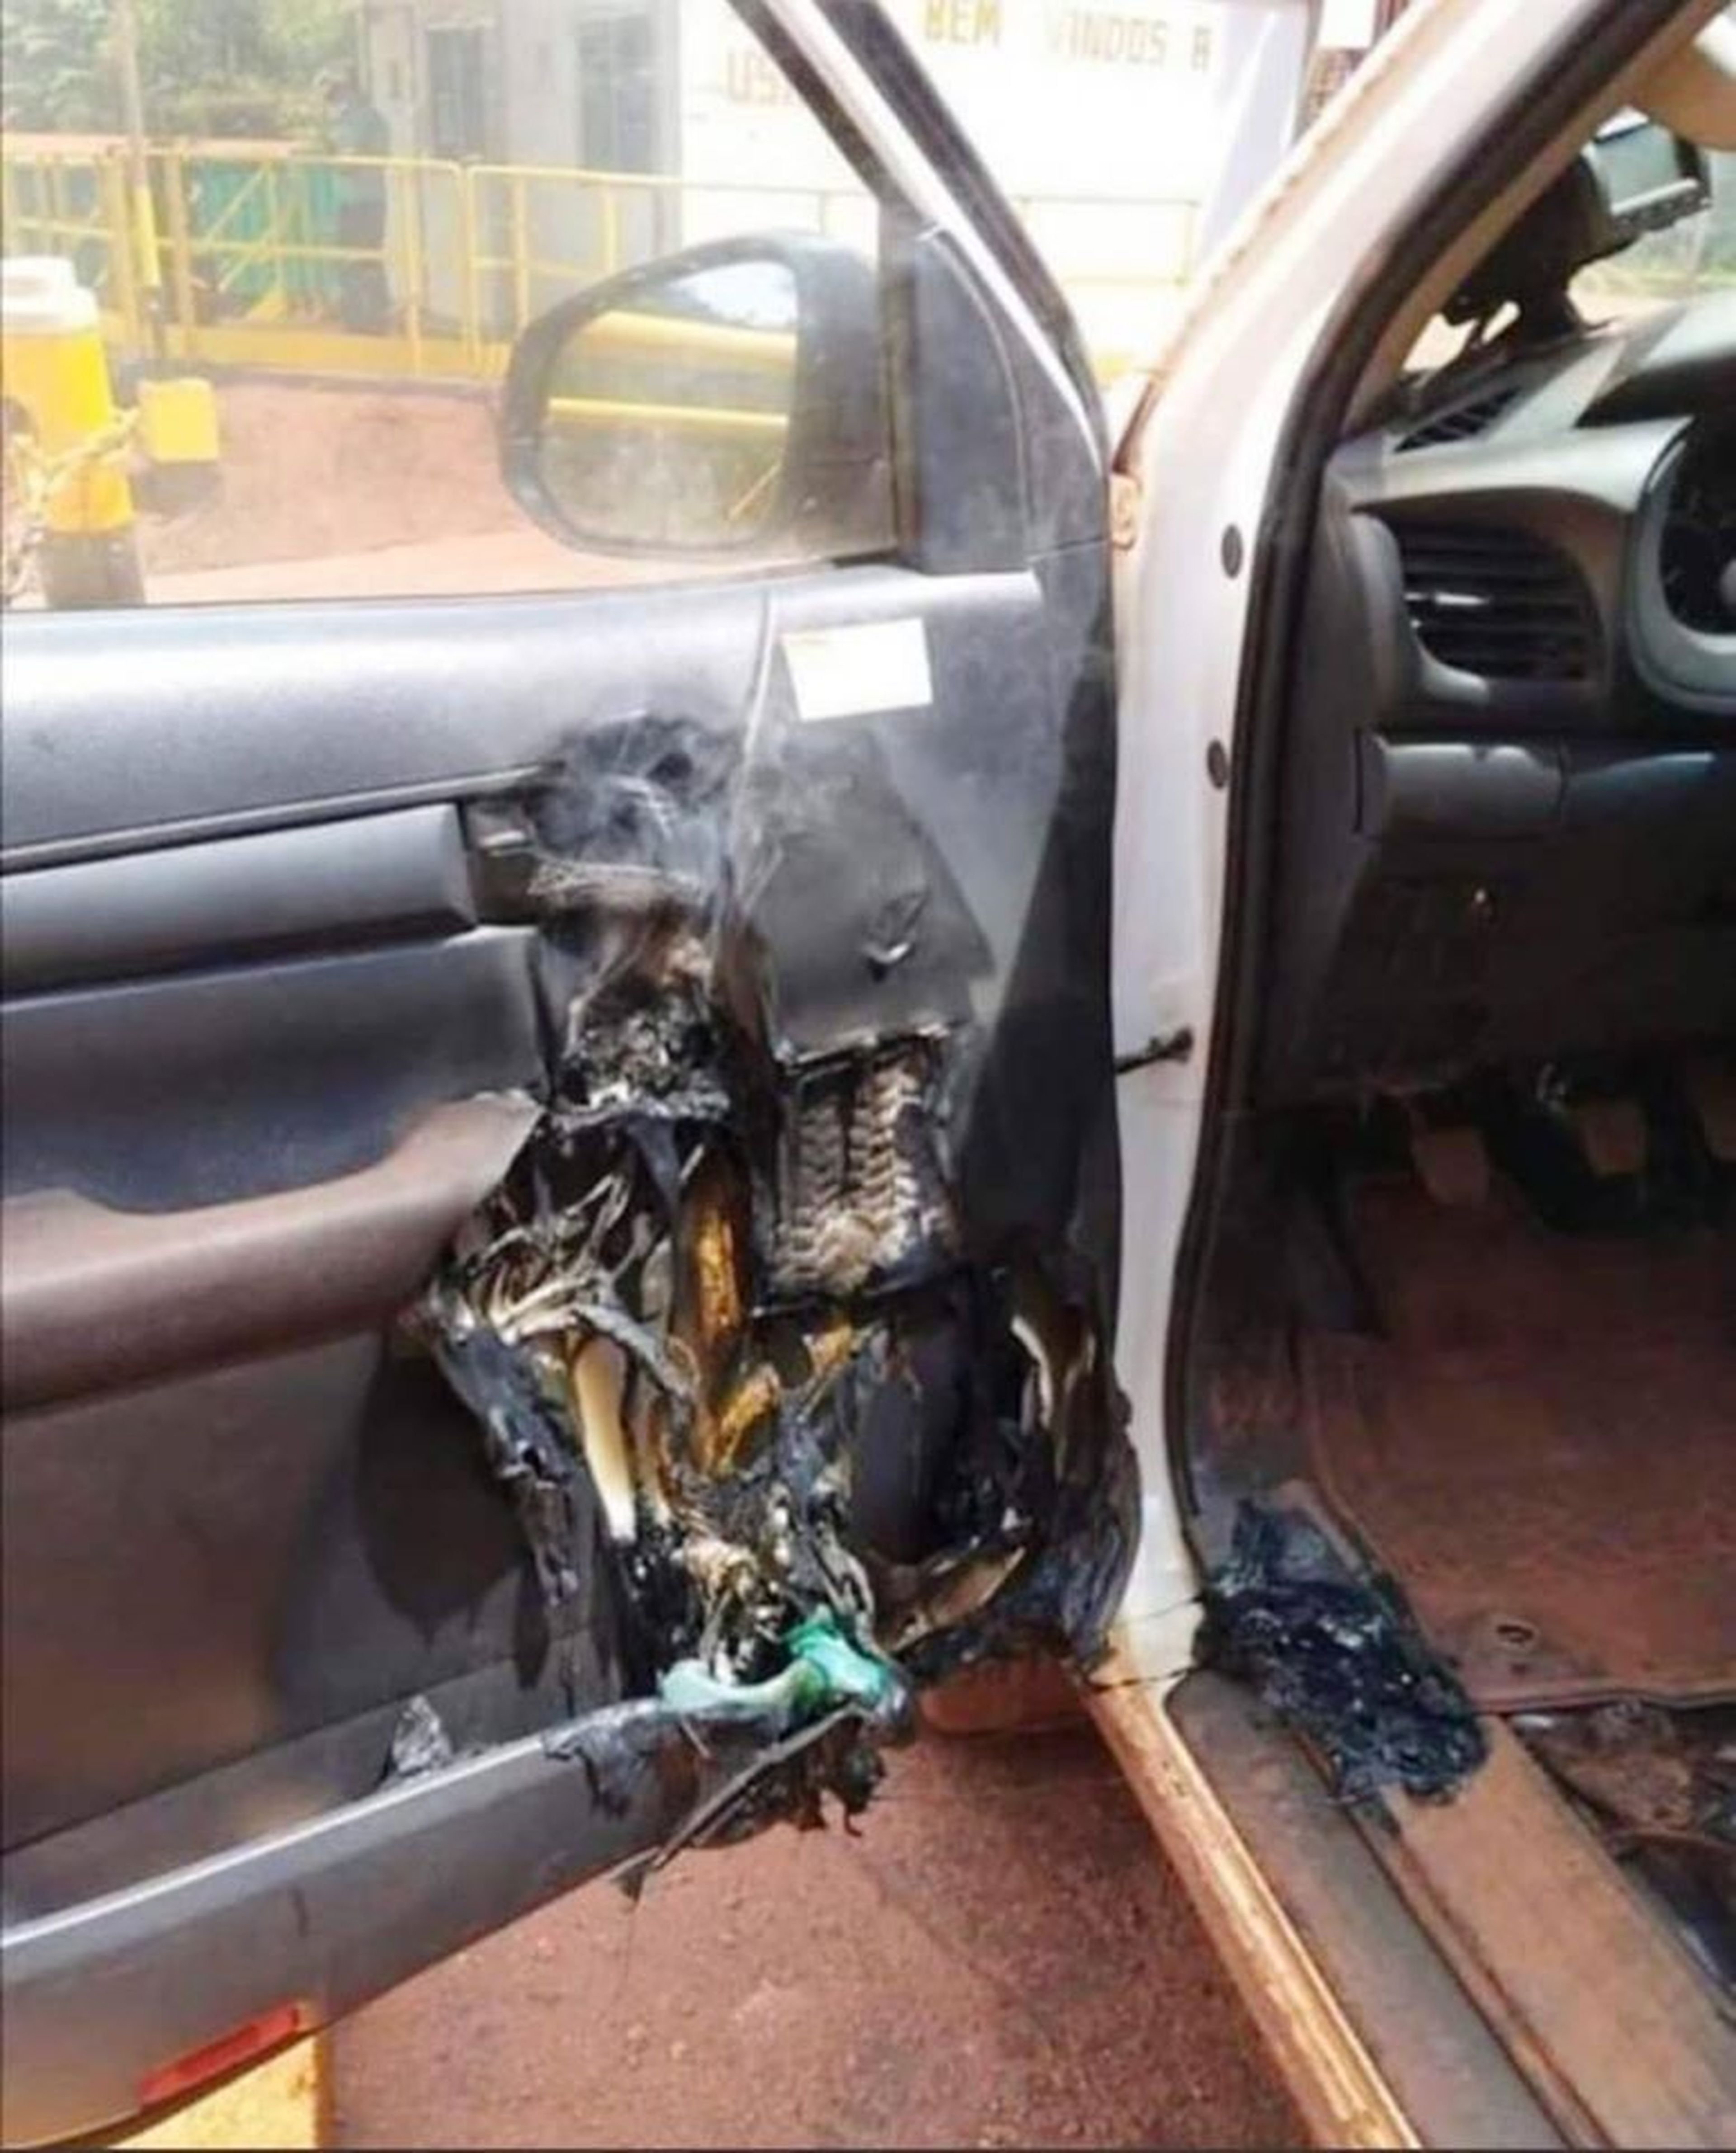 Falso: el desinfectante no puede explotar en el interior de un vehículo.